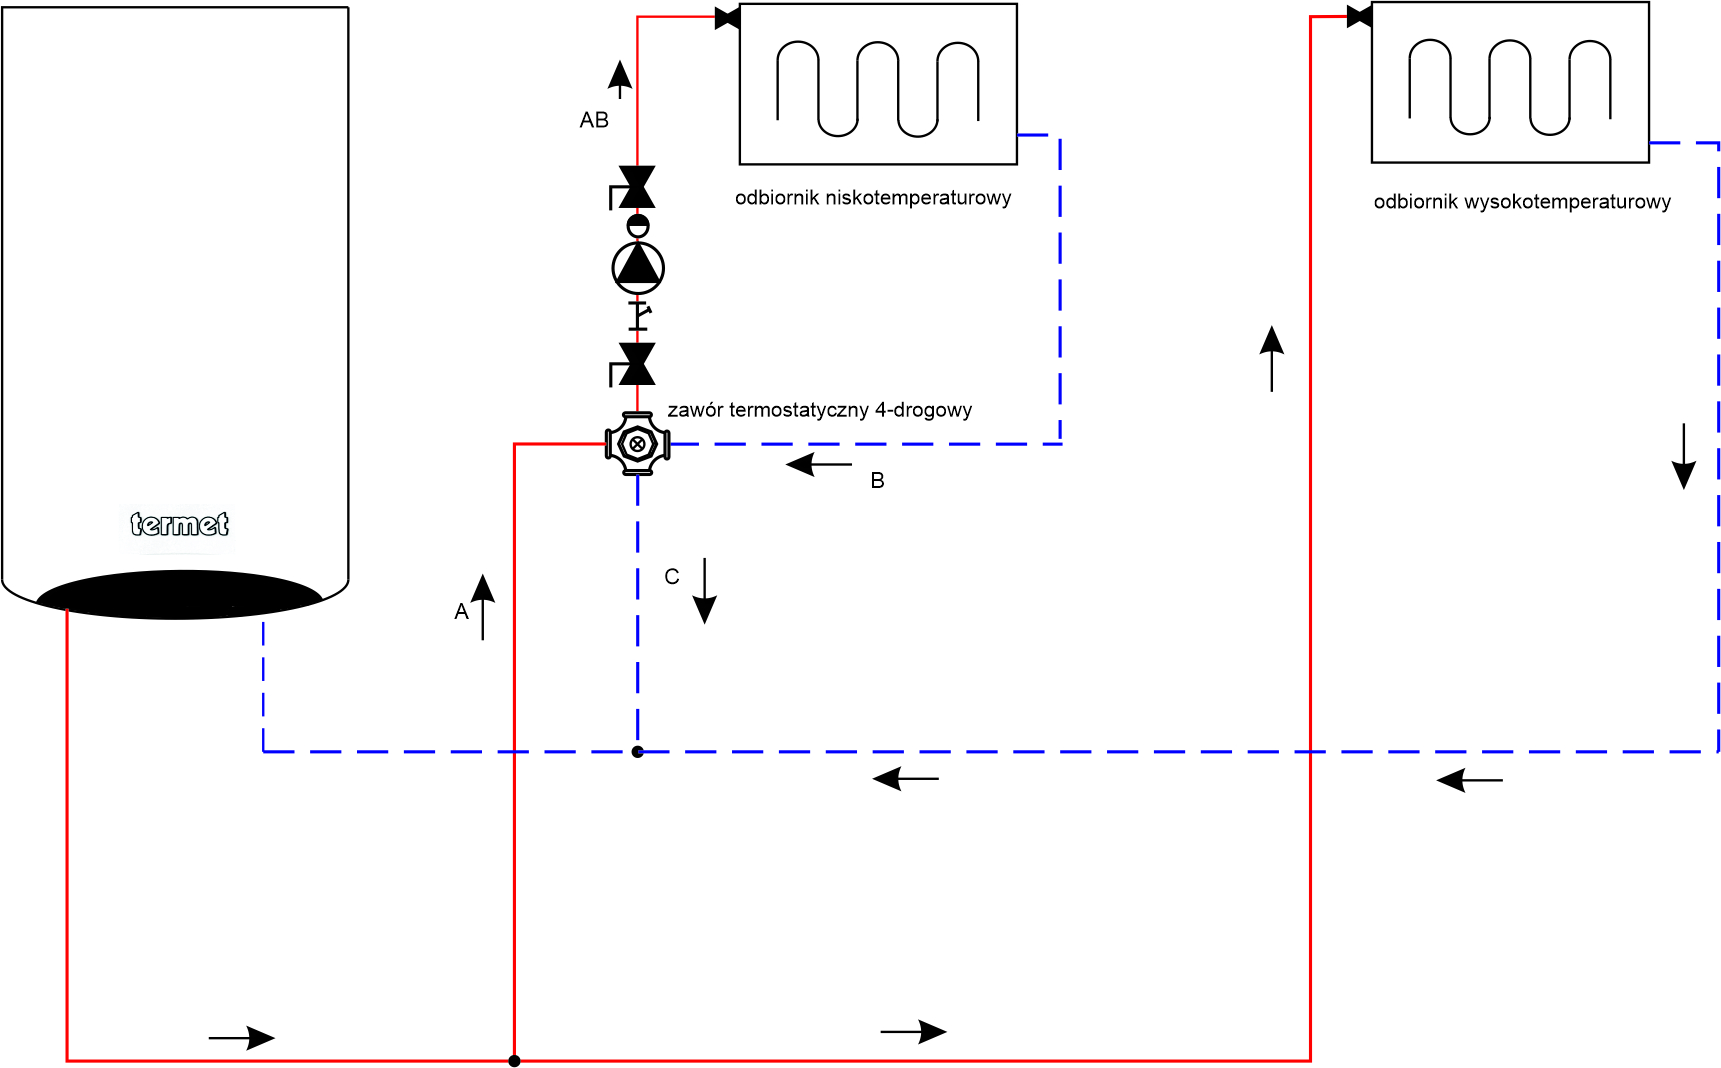 Zawór mieszający do podłogówki – schemat instalacji centralnego ogrzewania z zastosowaniem 4-drogowego zaworu termostatycznego (schemat ideowy)